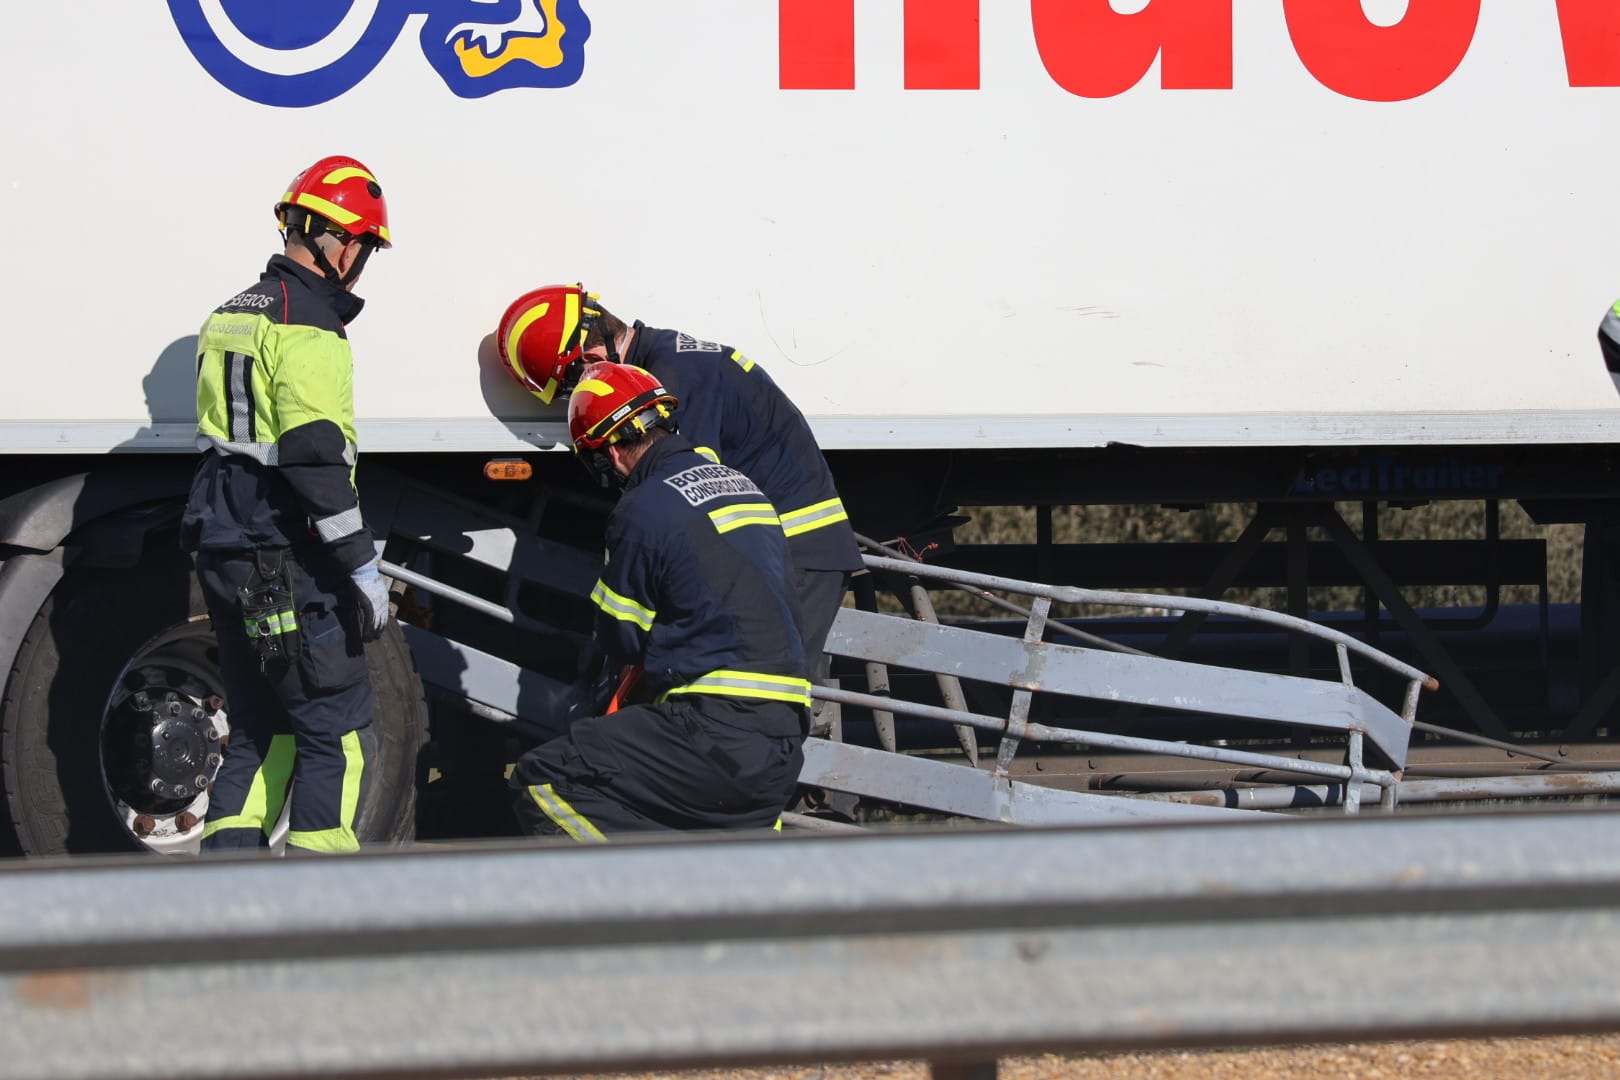 GALERÍA | Un accidente mortal en El Cubo de Tierra del Vino moviliza a los bomberos de la Diputación de Salamanca. Fotos Andrea M.